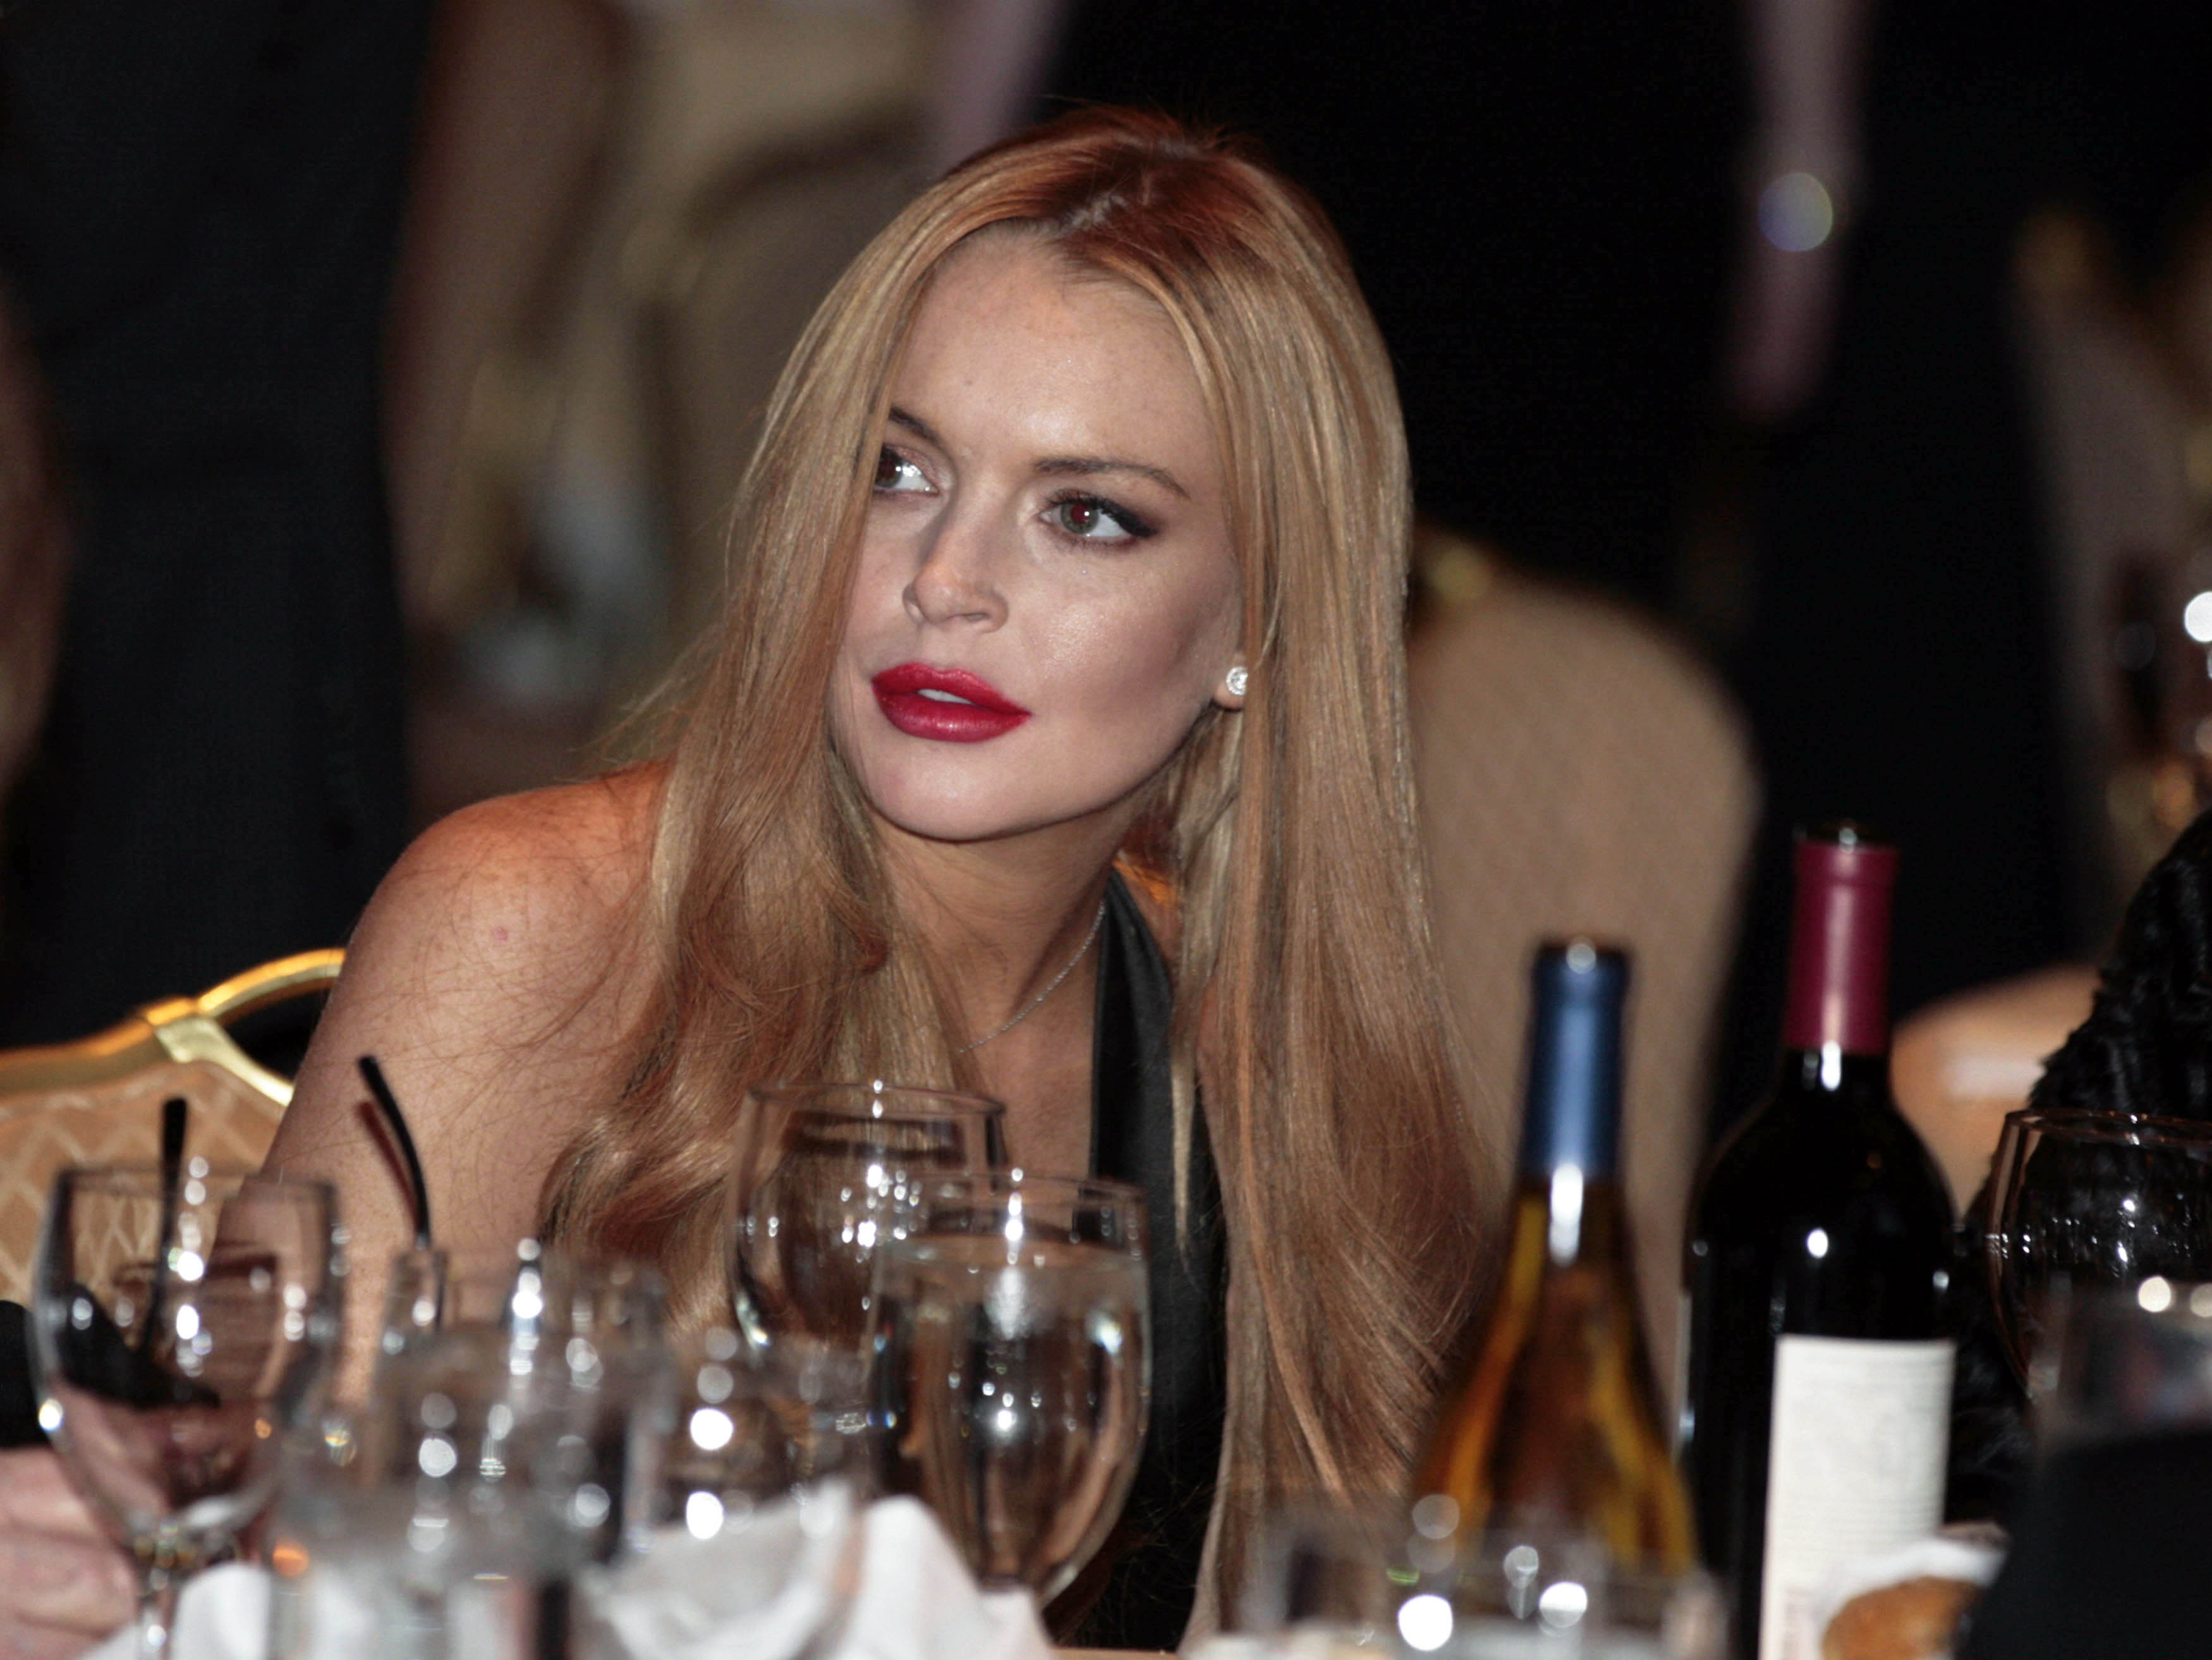 Trinken gehört zu einem aktiven Solzialleben: Die Schauspielerin Lindsay Lohan 2012 an einem Dinner im Weissen Haus. Foto: Larry Downing (Reuters)